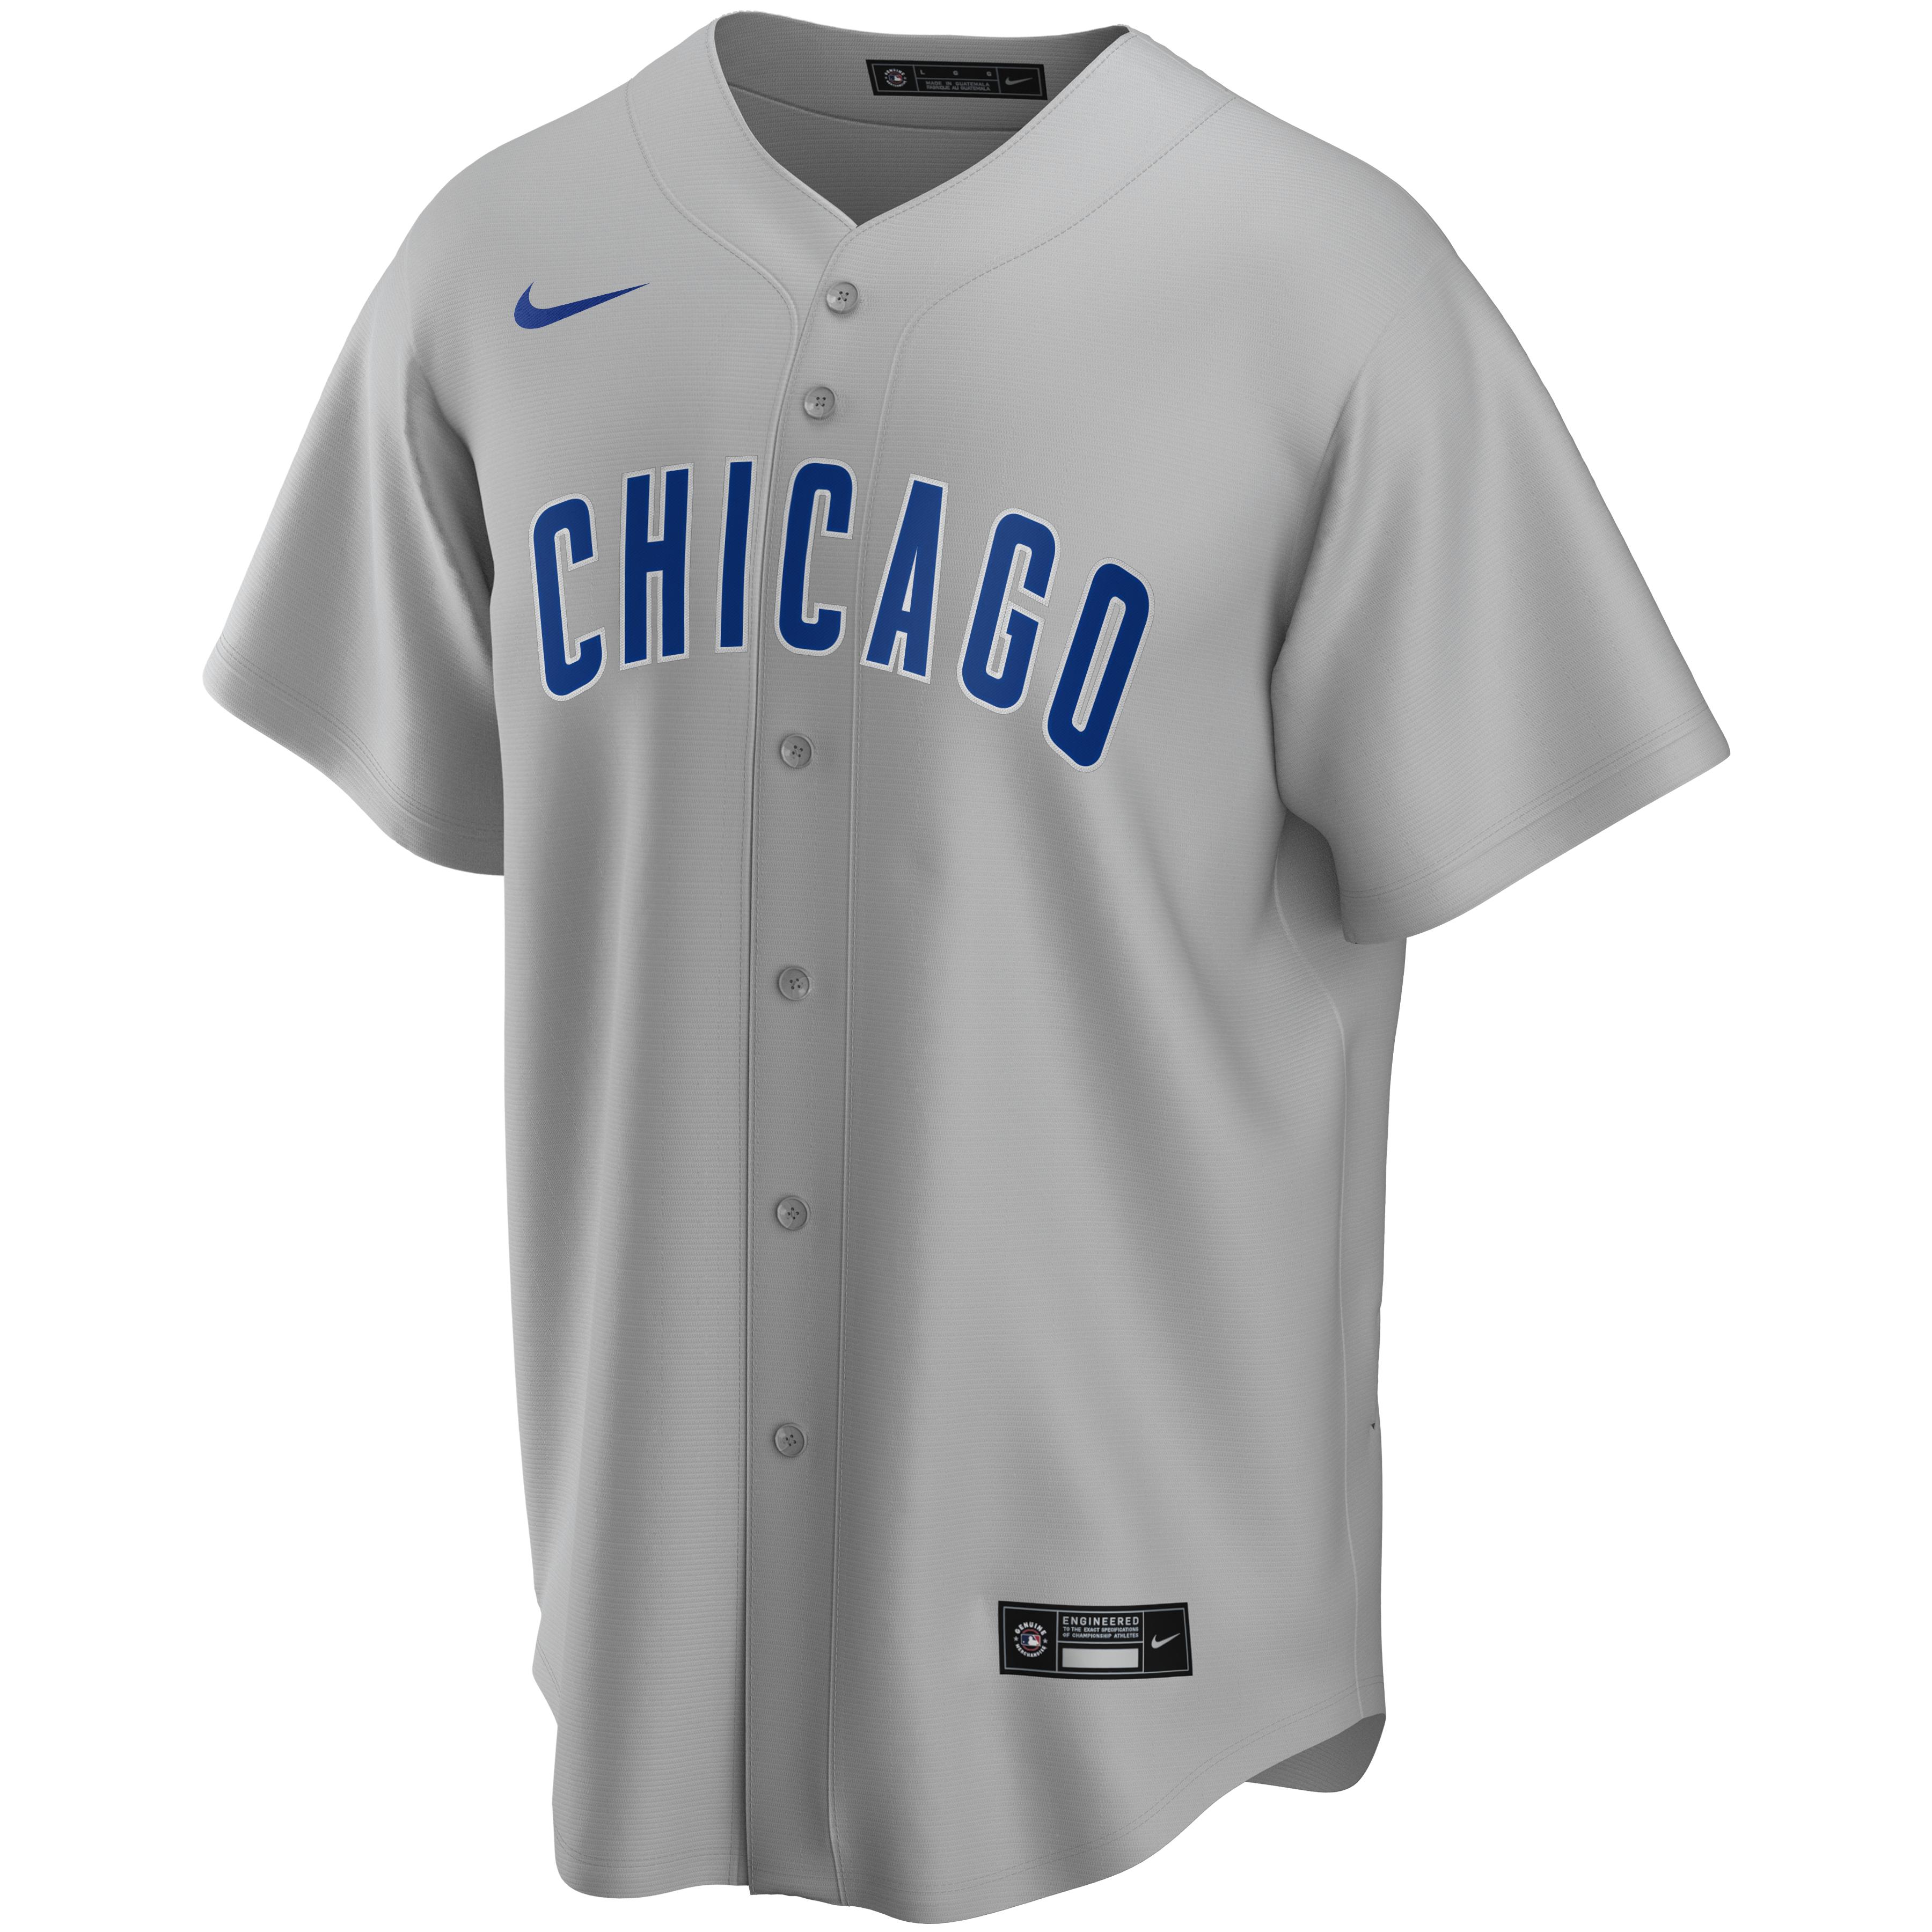 Chicago Cubs Jerseys, Cubs Baseball Jersey, Uniforms